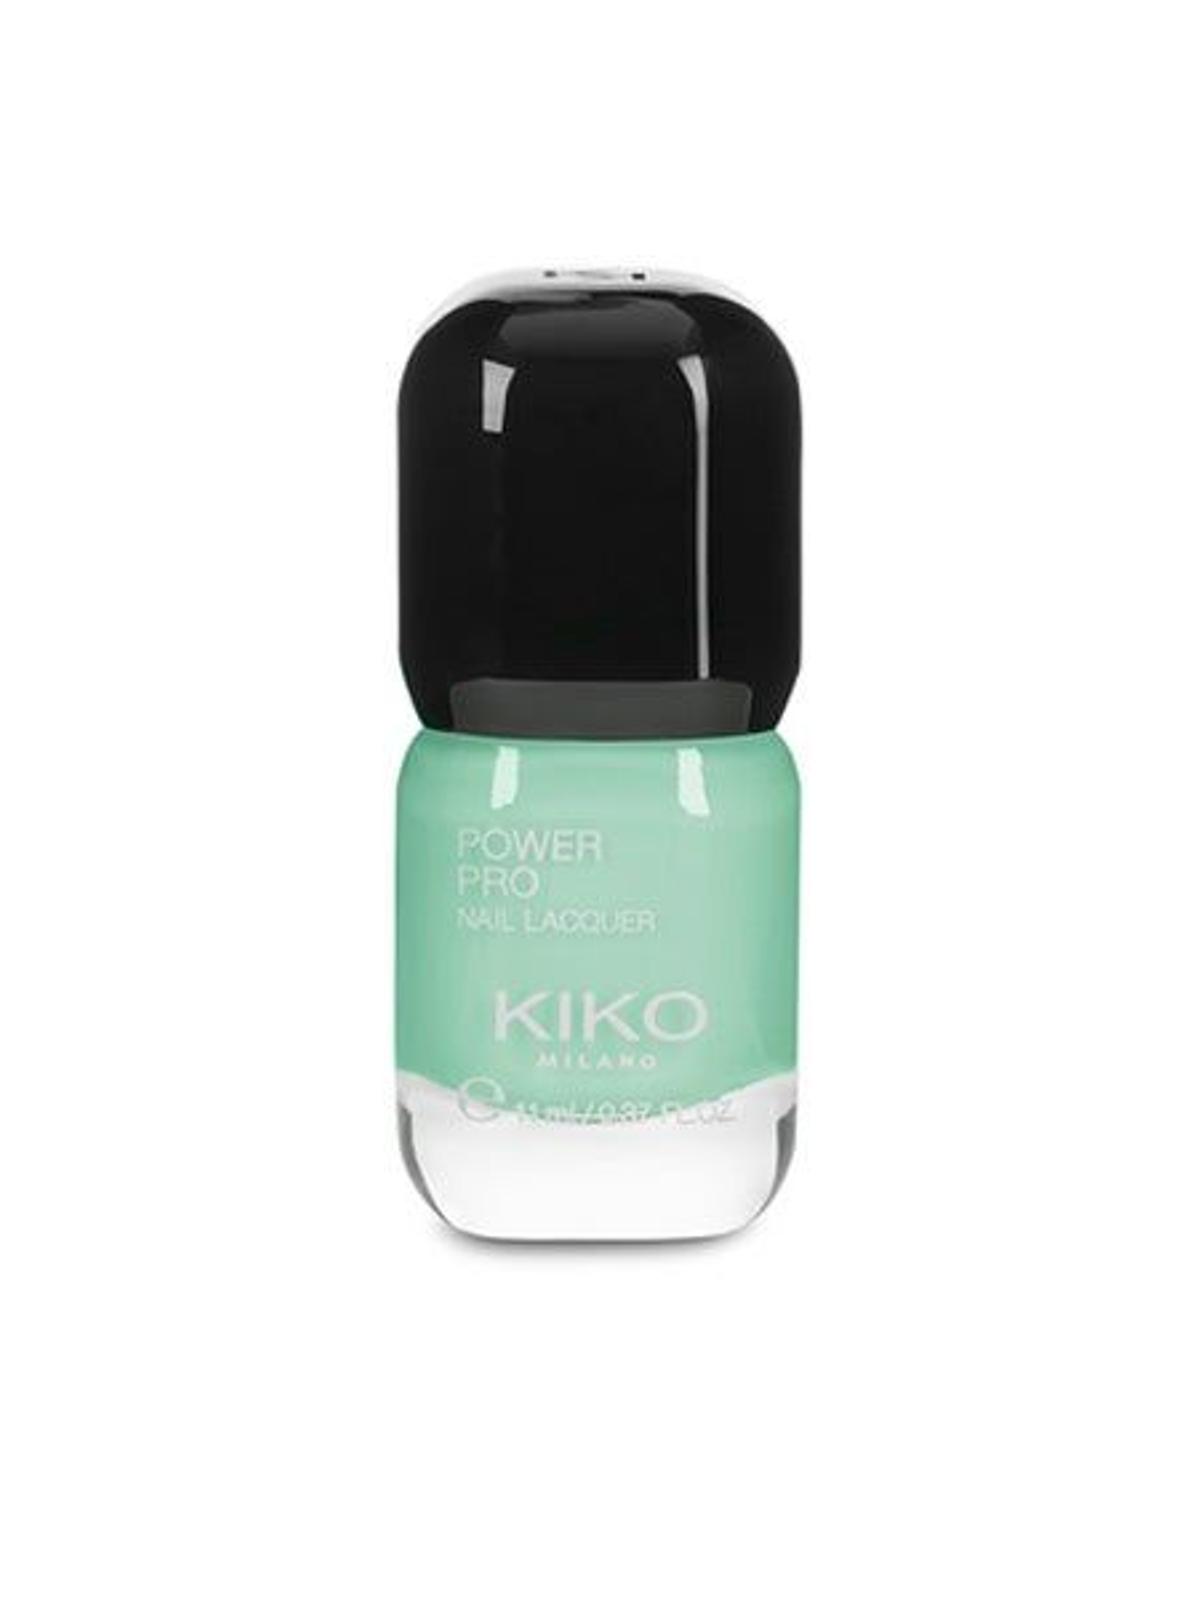 Esmalte Power Pro Nail Lacquer tono Mint Milk de Kiko Cosmetics